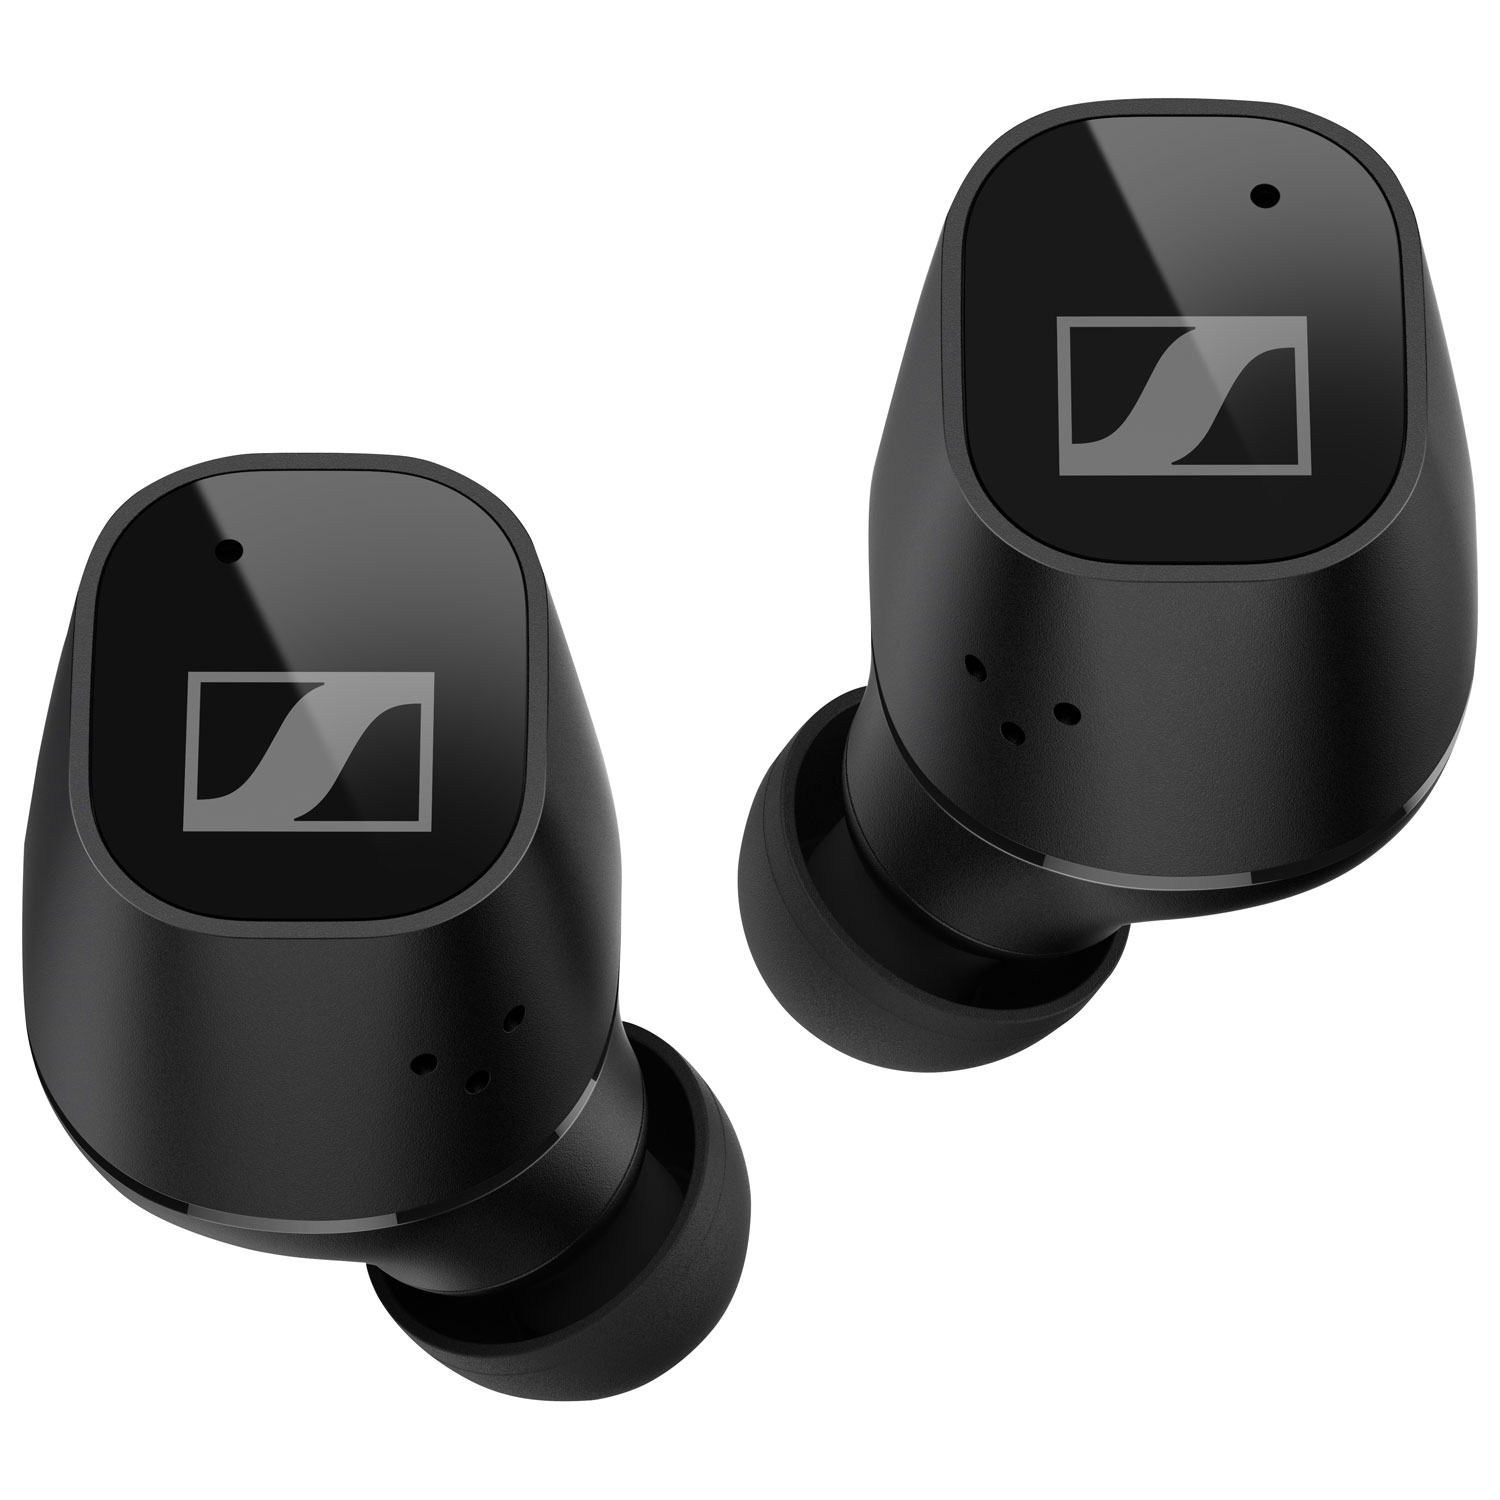 Sennheiser CX Plus In-Ear Noise Cancelling True Wireless Earbuds - Black